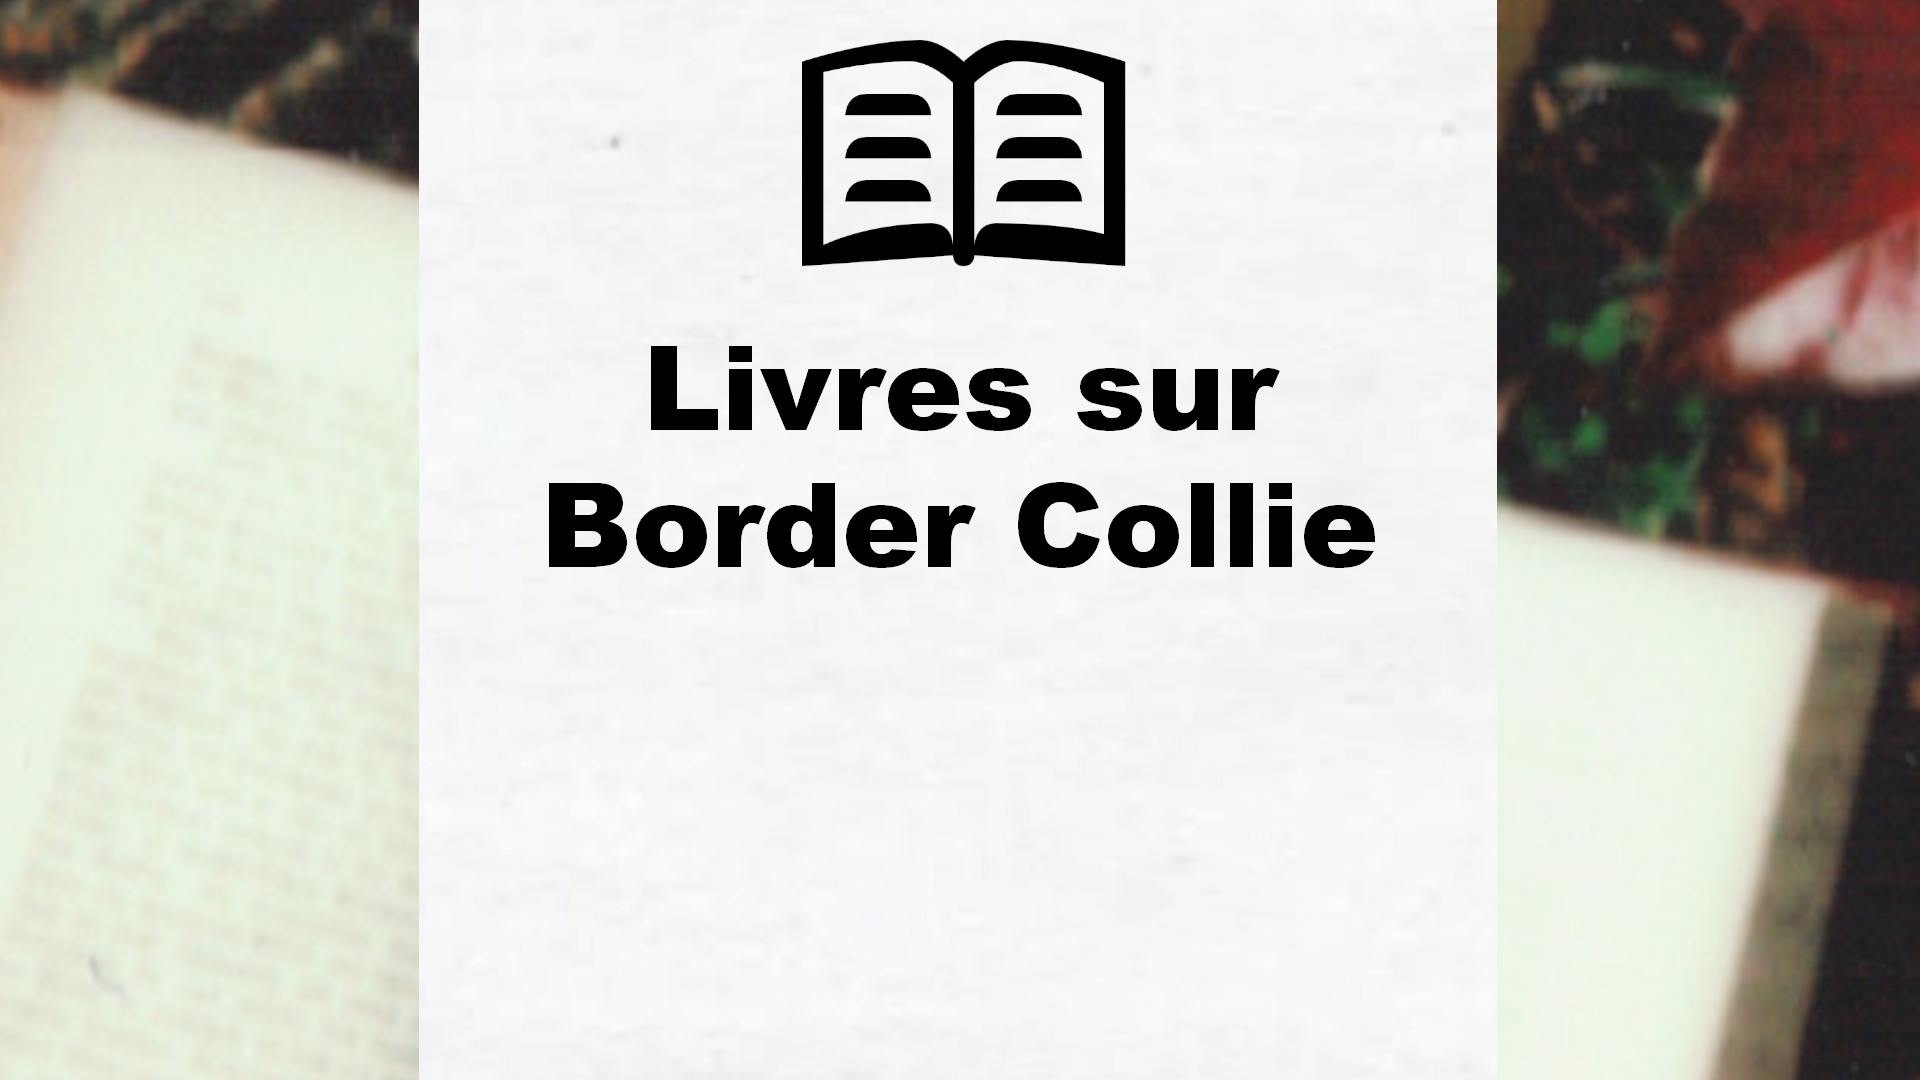 Livres sur Border Collie